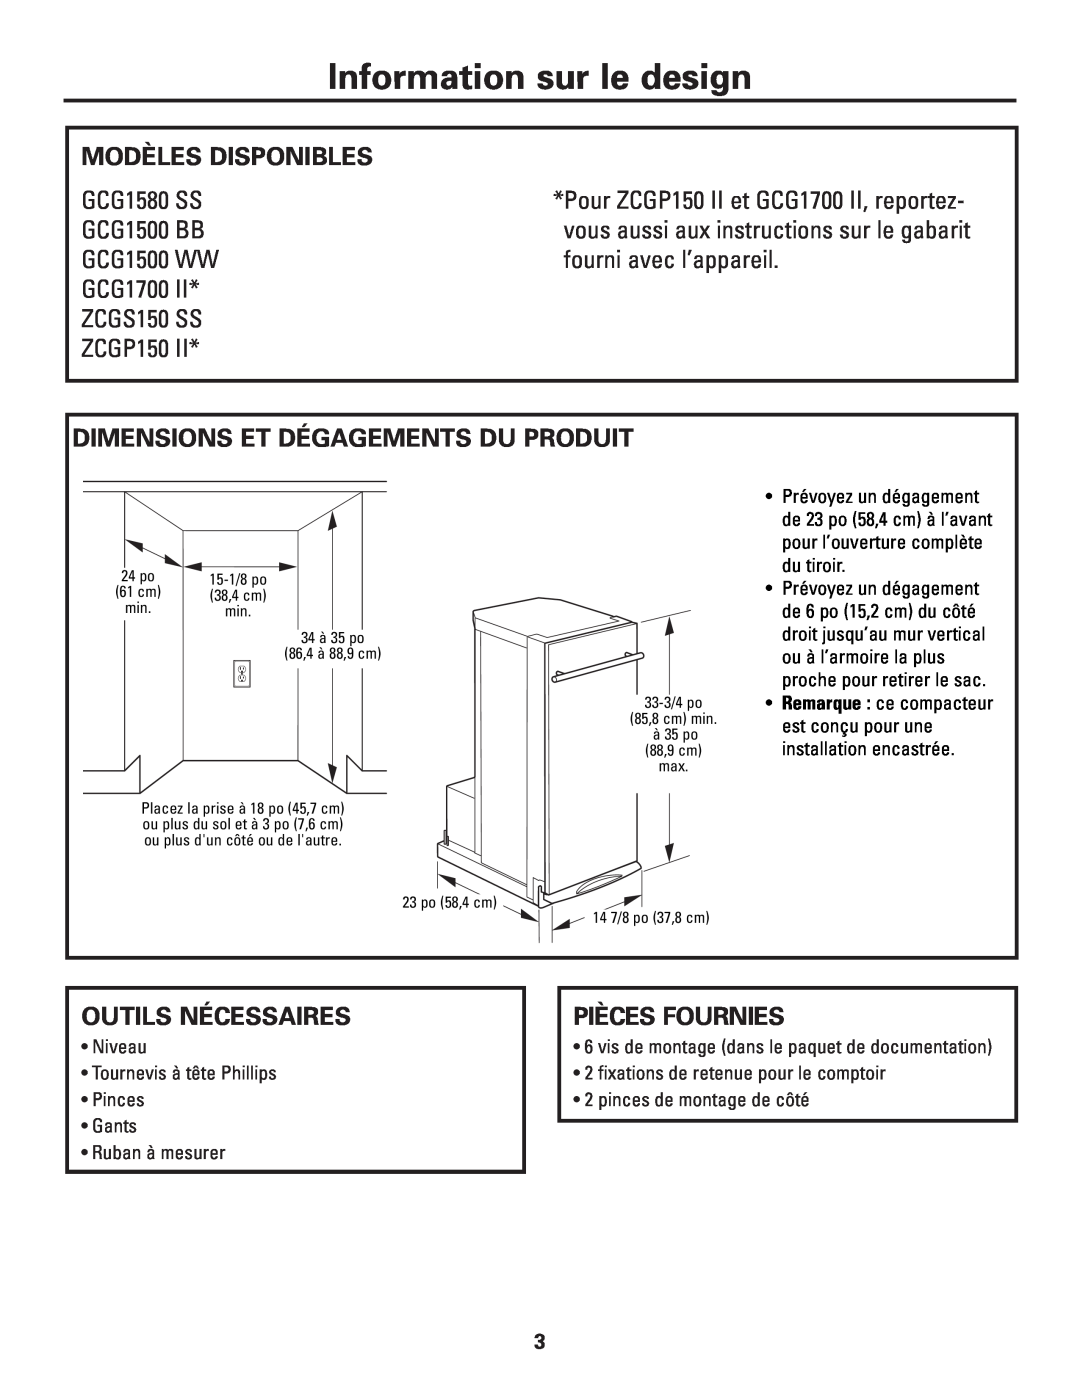 GE ZCGS150 SS Information sur le design, Modèles Disponibles, vous aussi aux instructions sur le gabarit, Pièces Fournies 